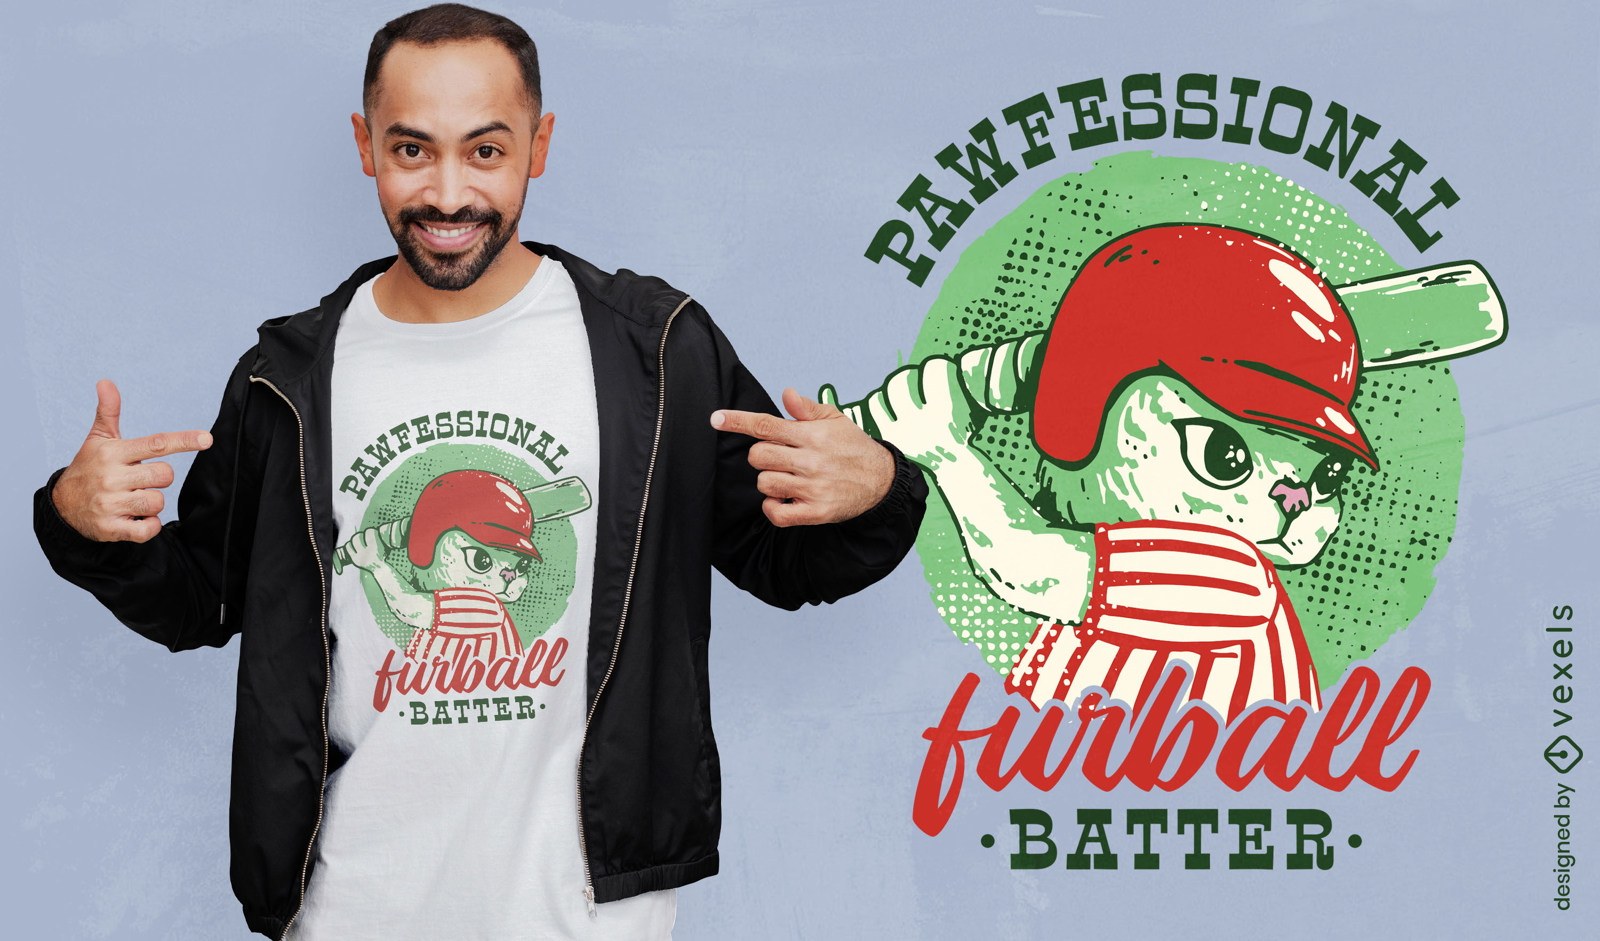 Baseball-Katzenteig-T-Shirt-Design